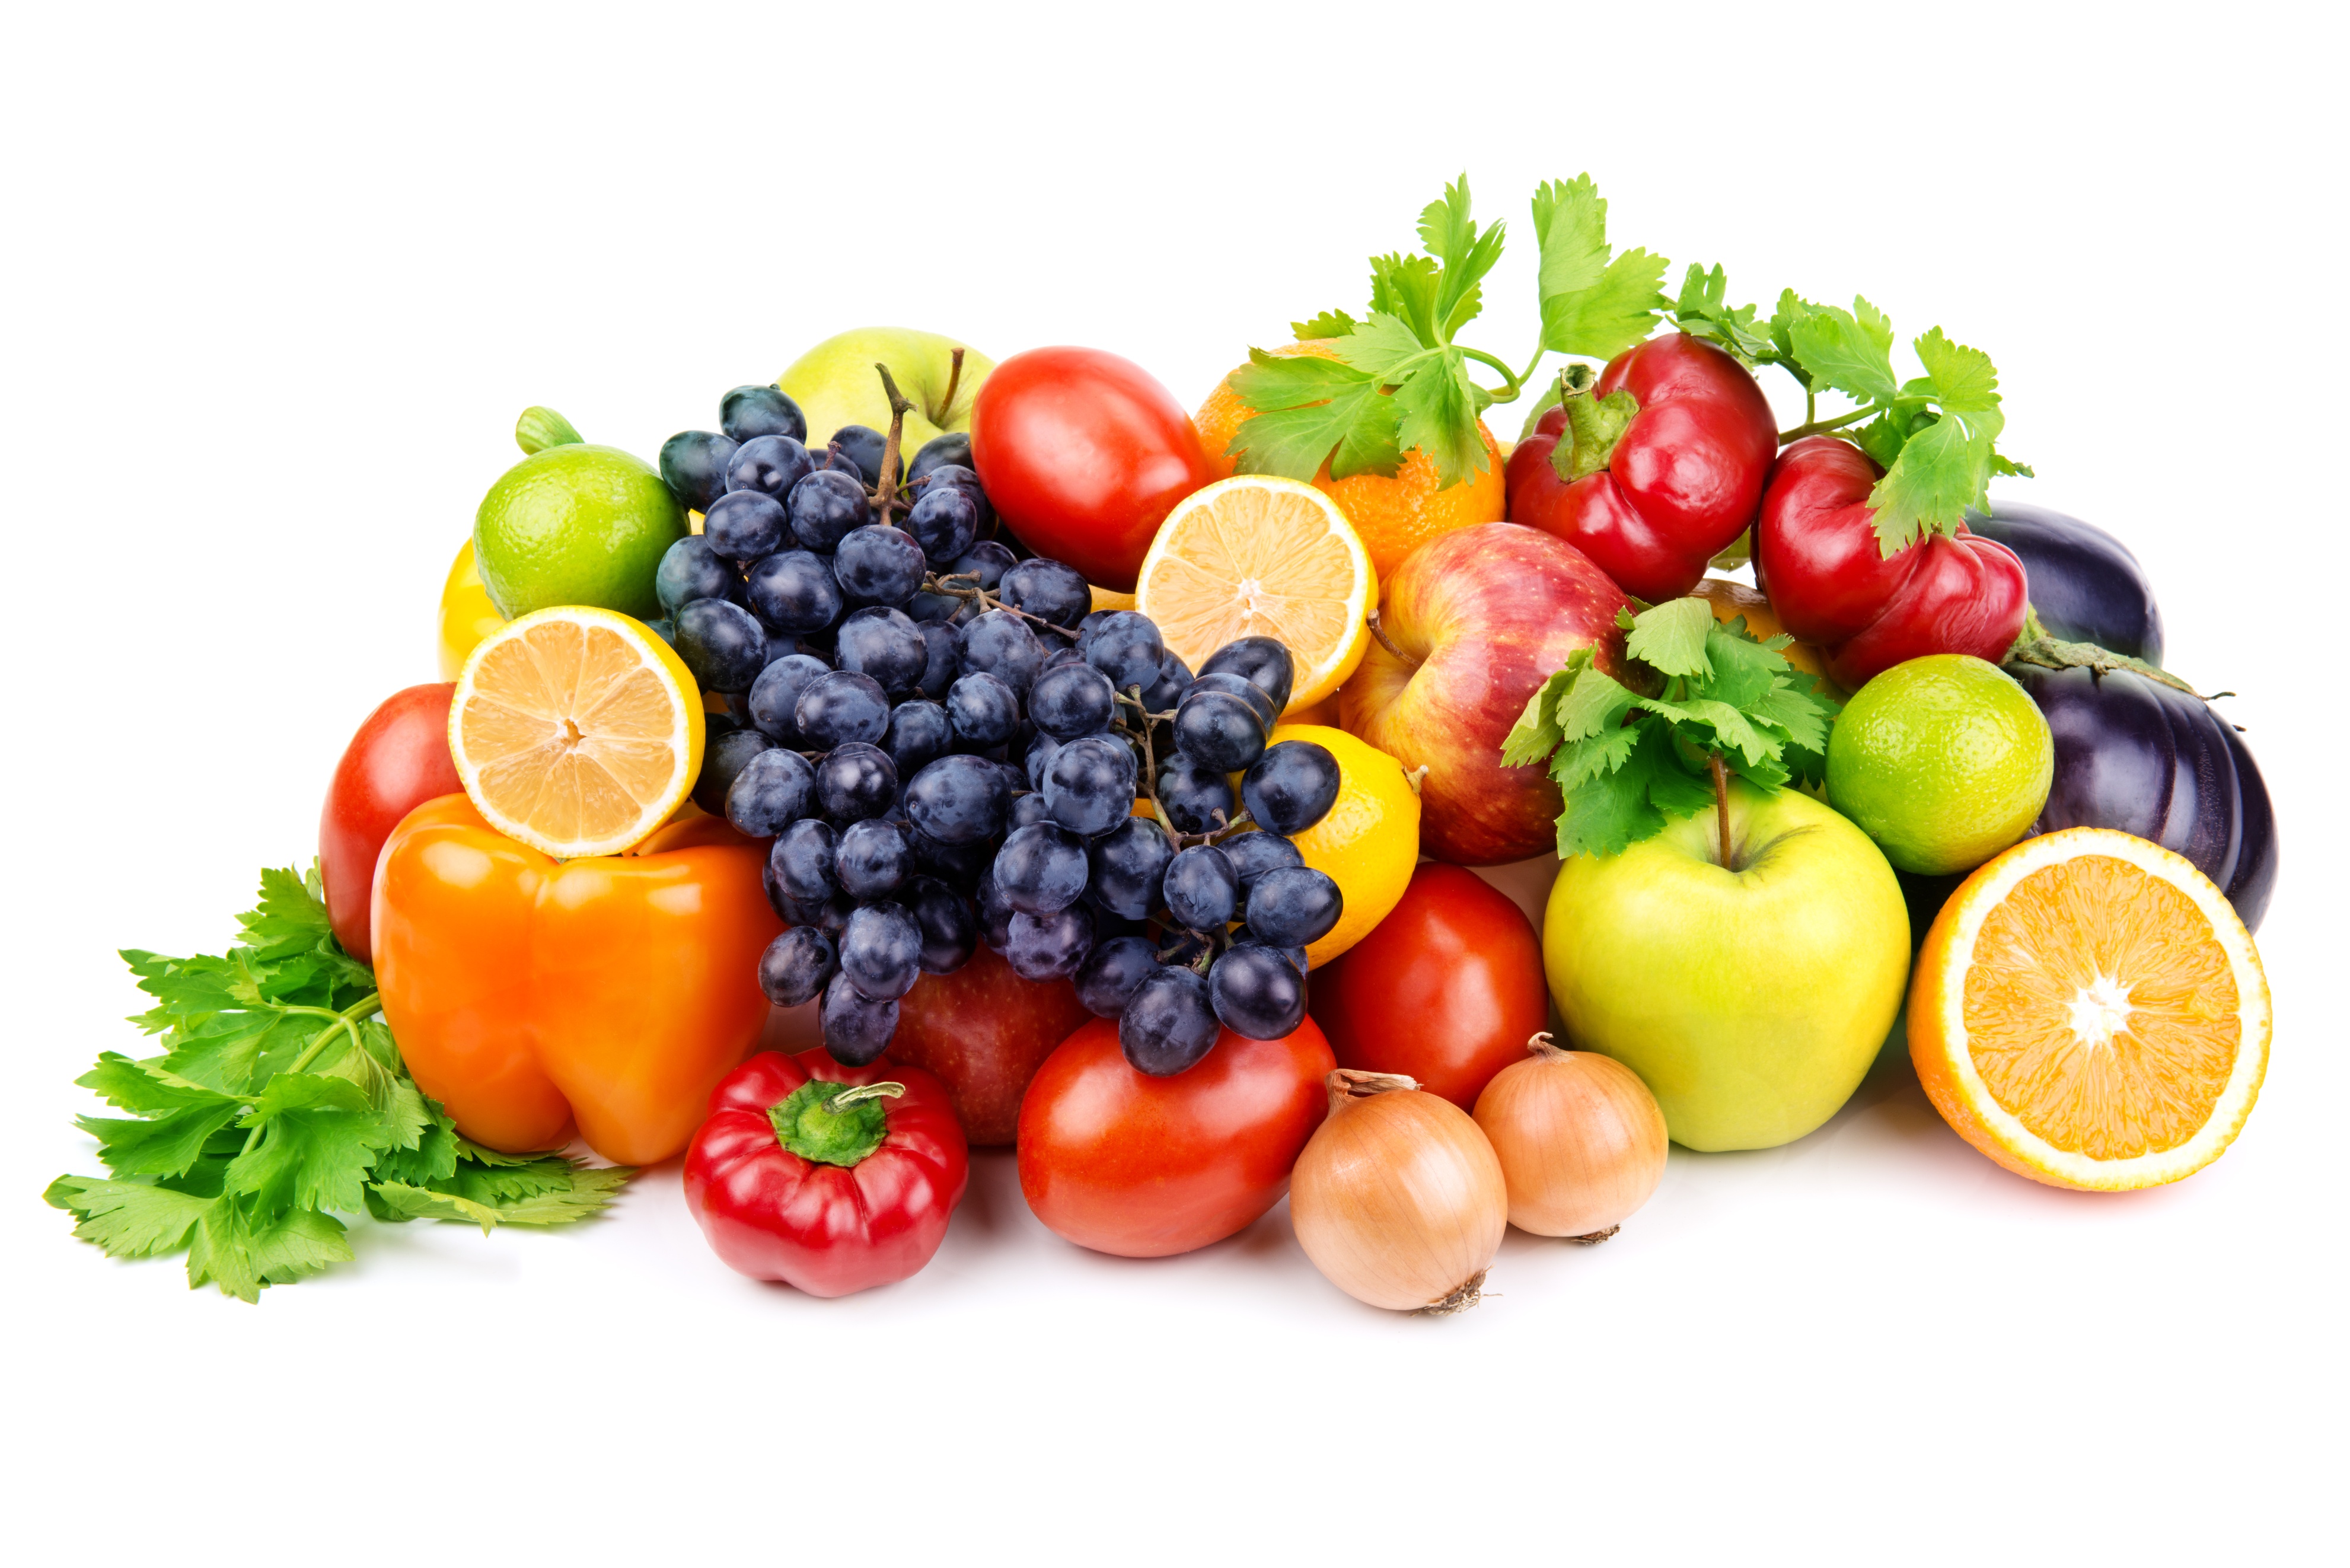 春季多吃这4种水果,补充营养增强免疫力,让孩子更健康